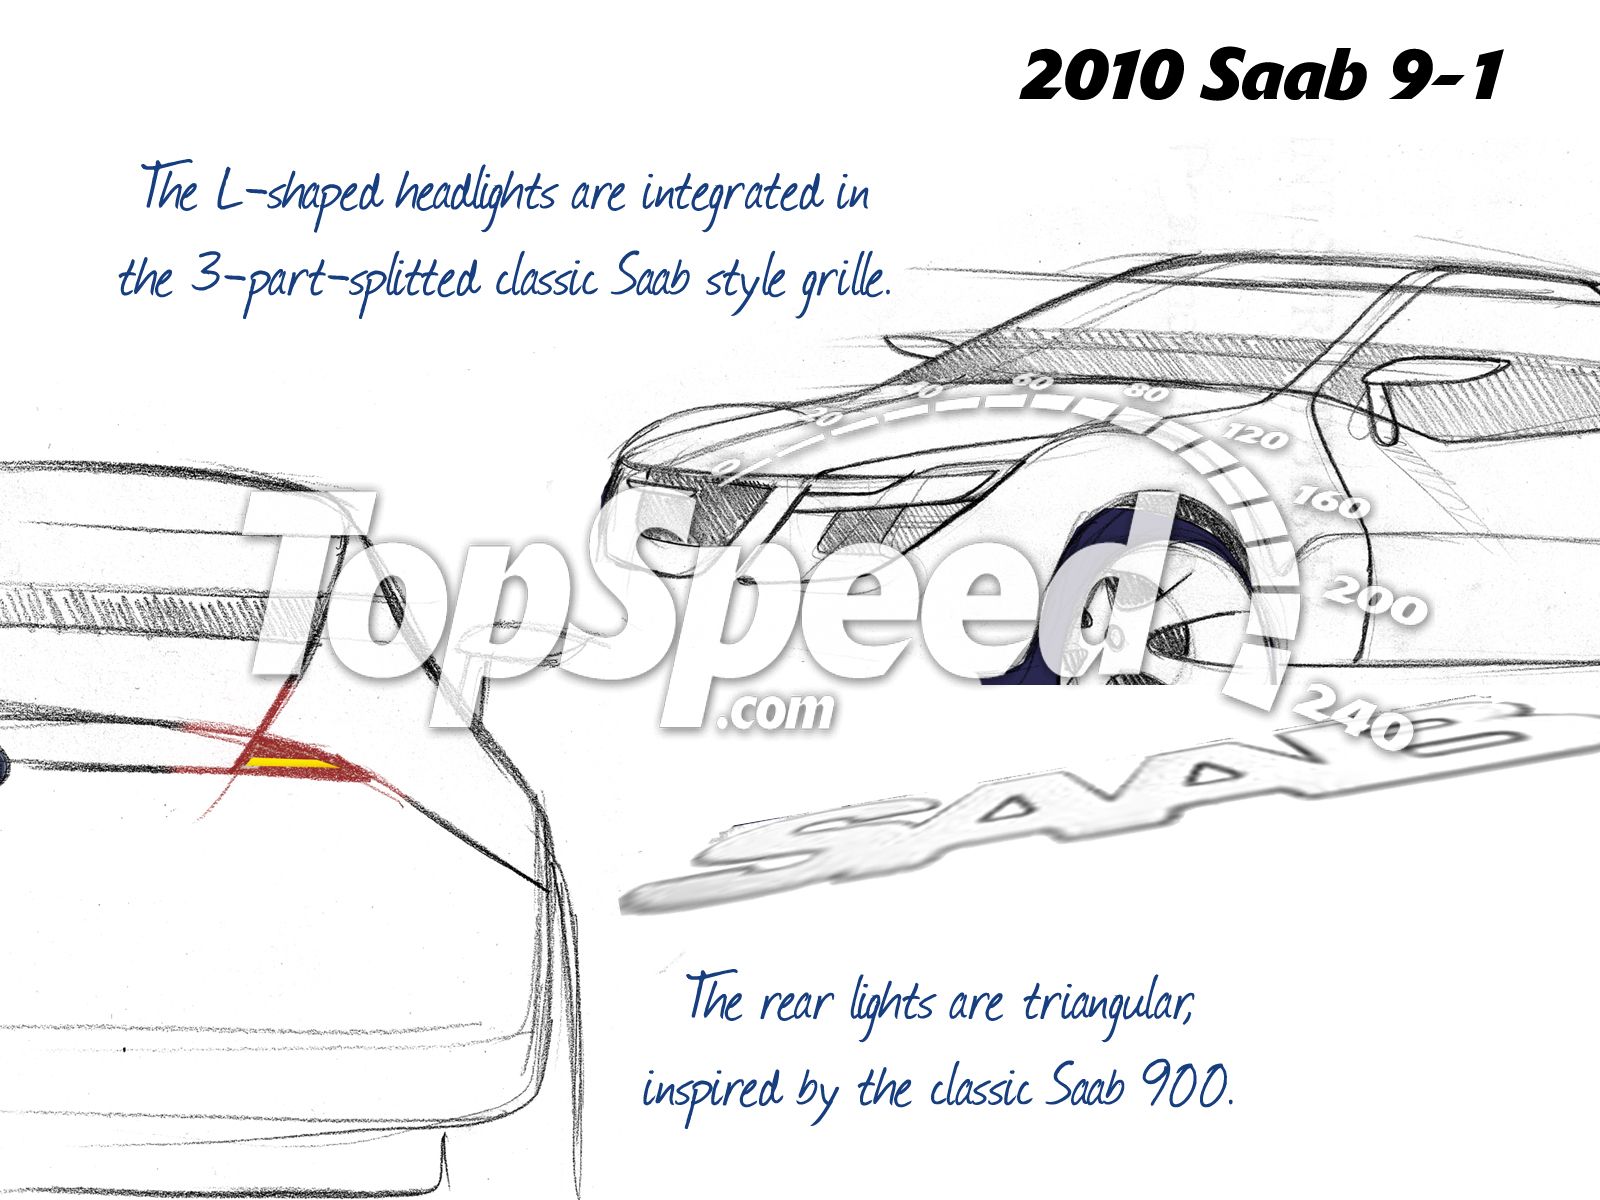 2010 Saab 9-1 renderings